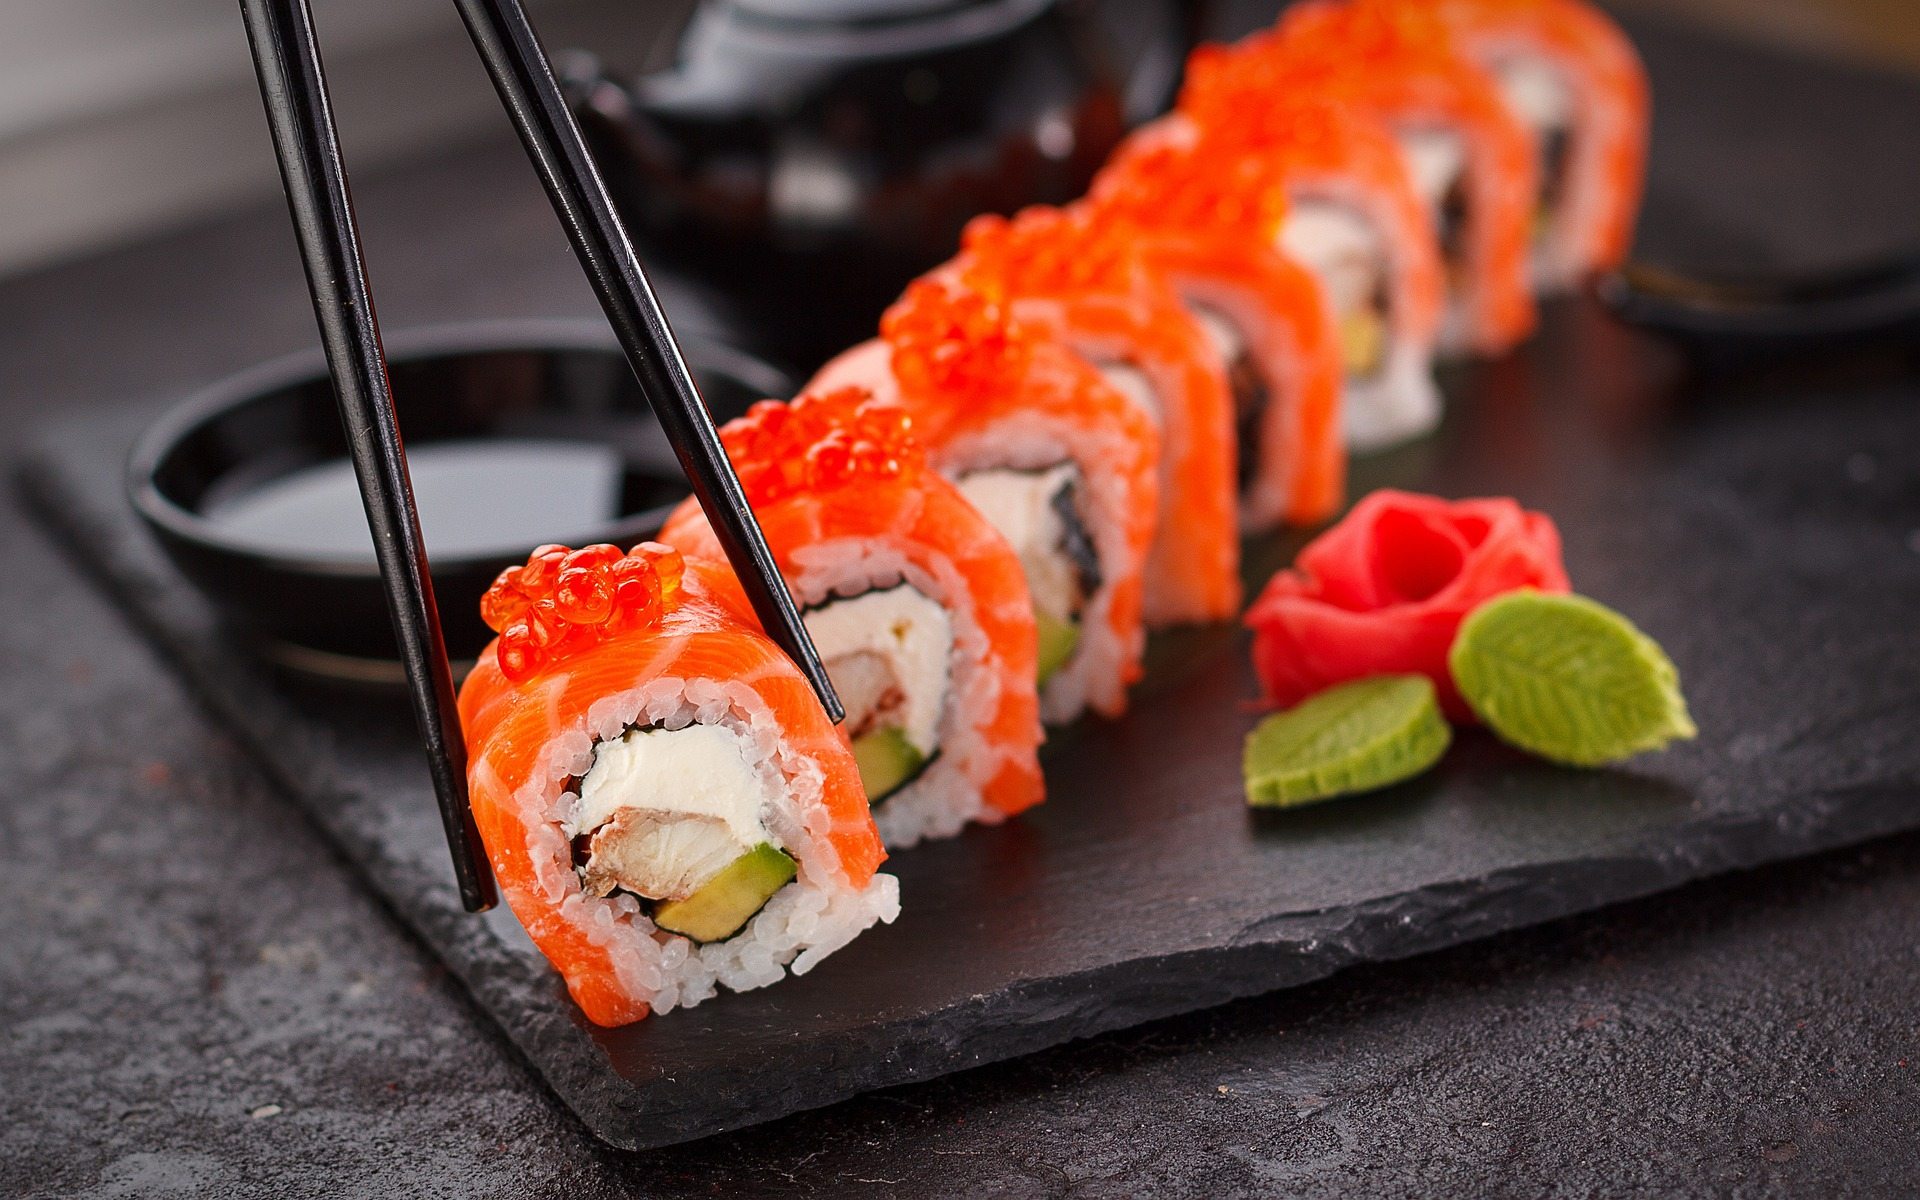 ¿Comes bien el sushi? Los 5 consejos para hacerlo de forma adecuada